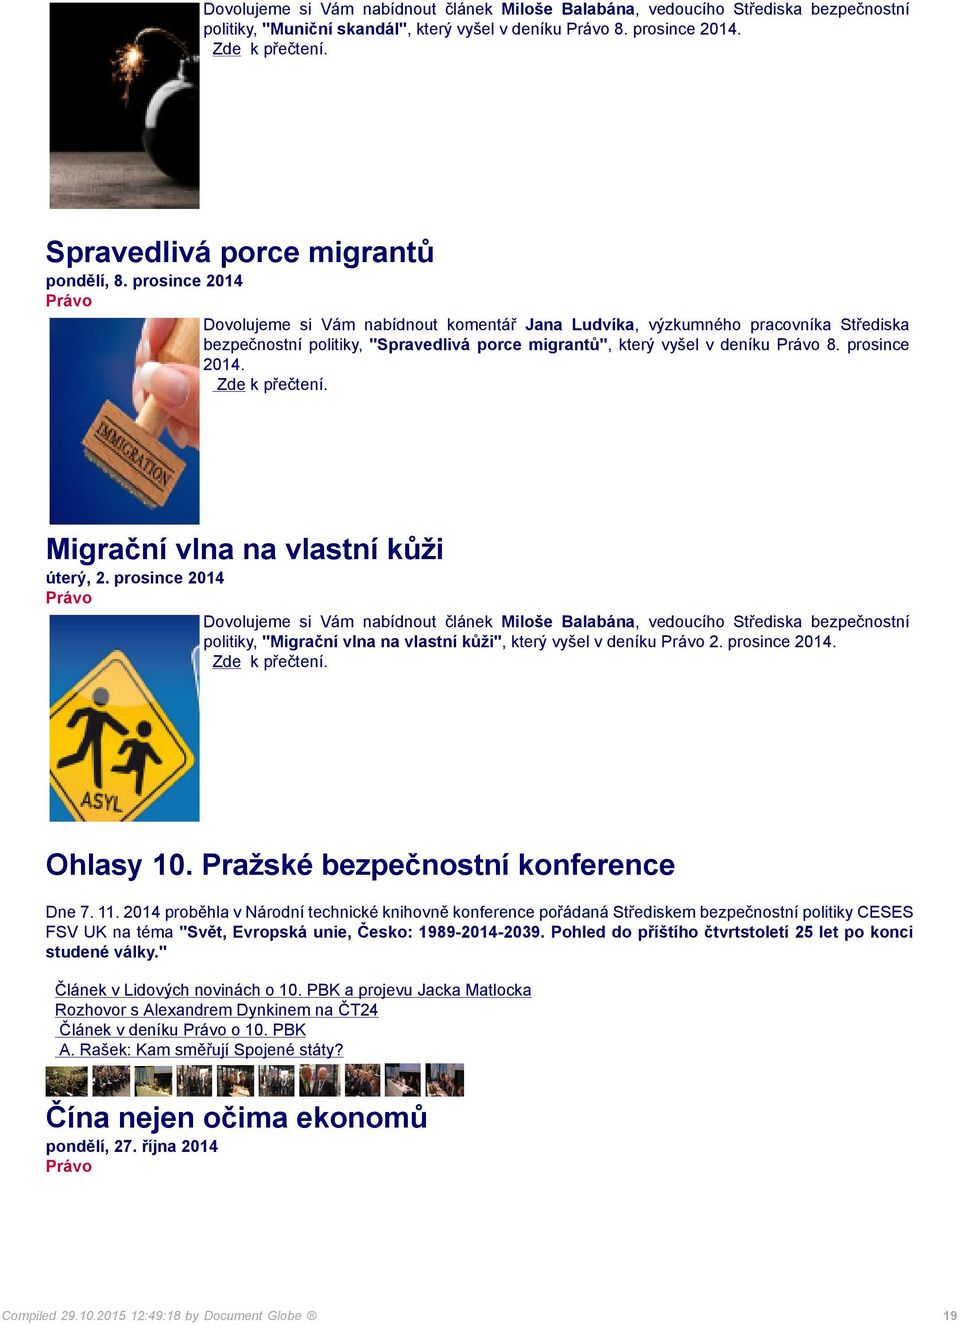 Migrační vlna na vlastní kůži úterý, 2. prosince 2014 politiky, "Migrační vlna na vlastní kůži", který vyšel v deníku 2. prosince 2014. Ohlasy 10. Pražské bezpečnostní konference Dne 7. 11.